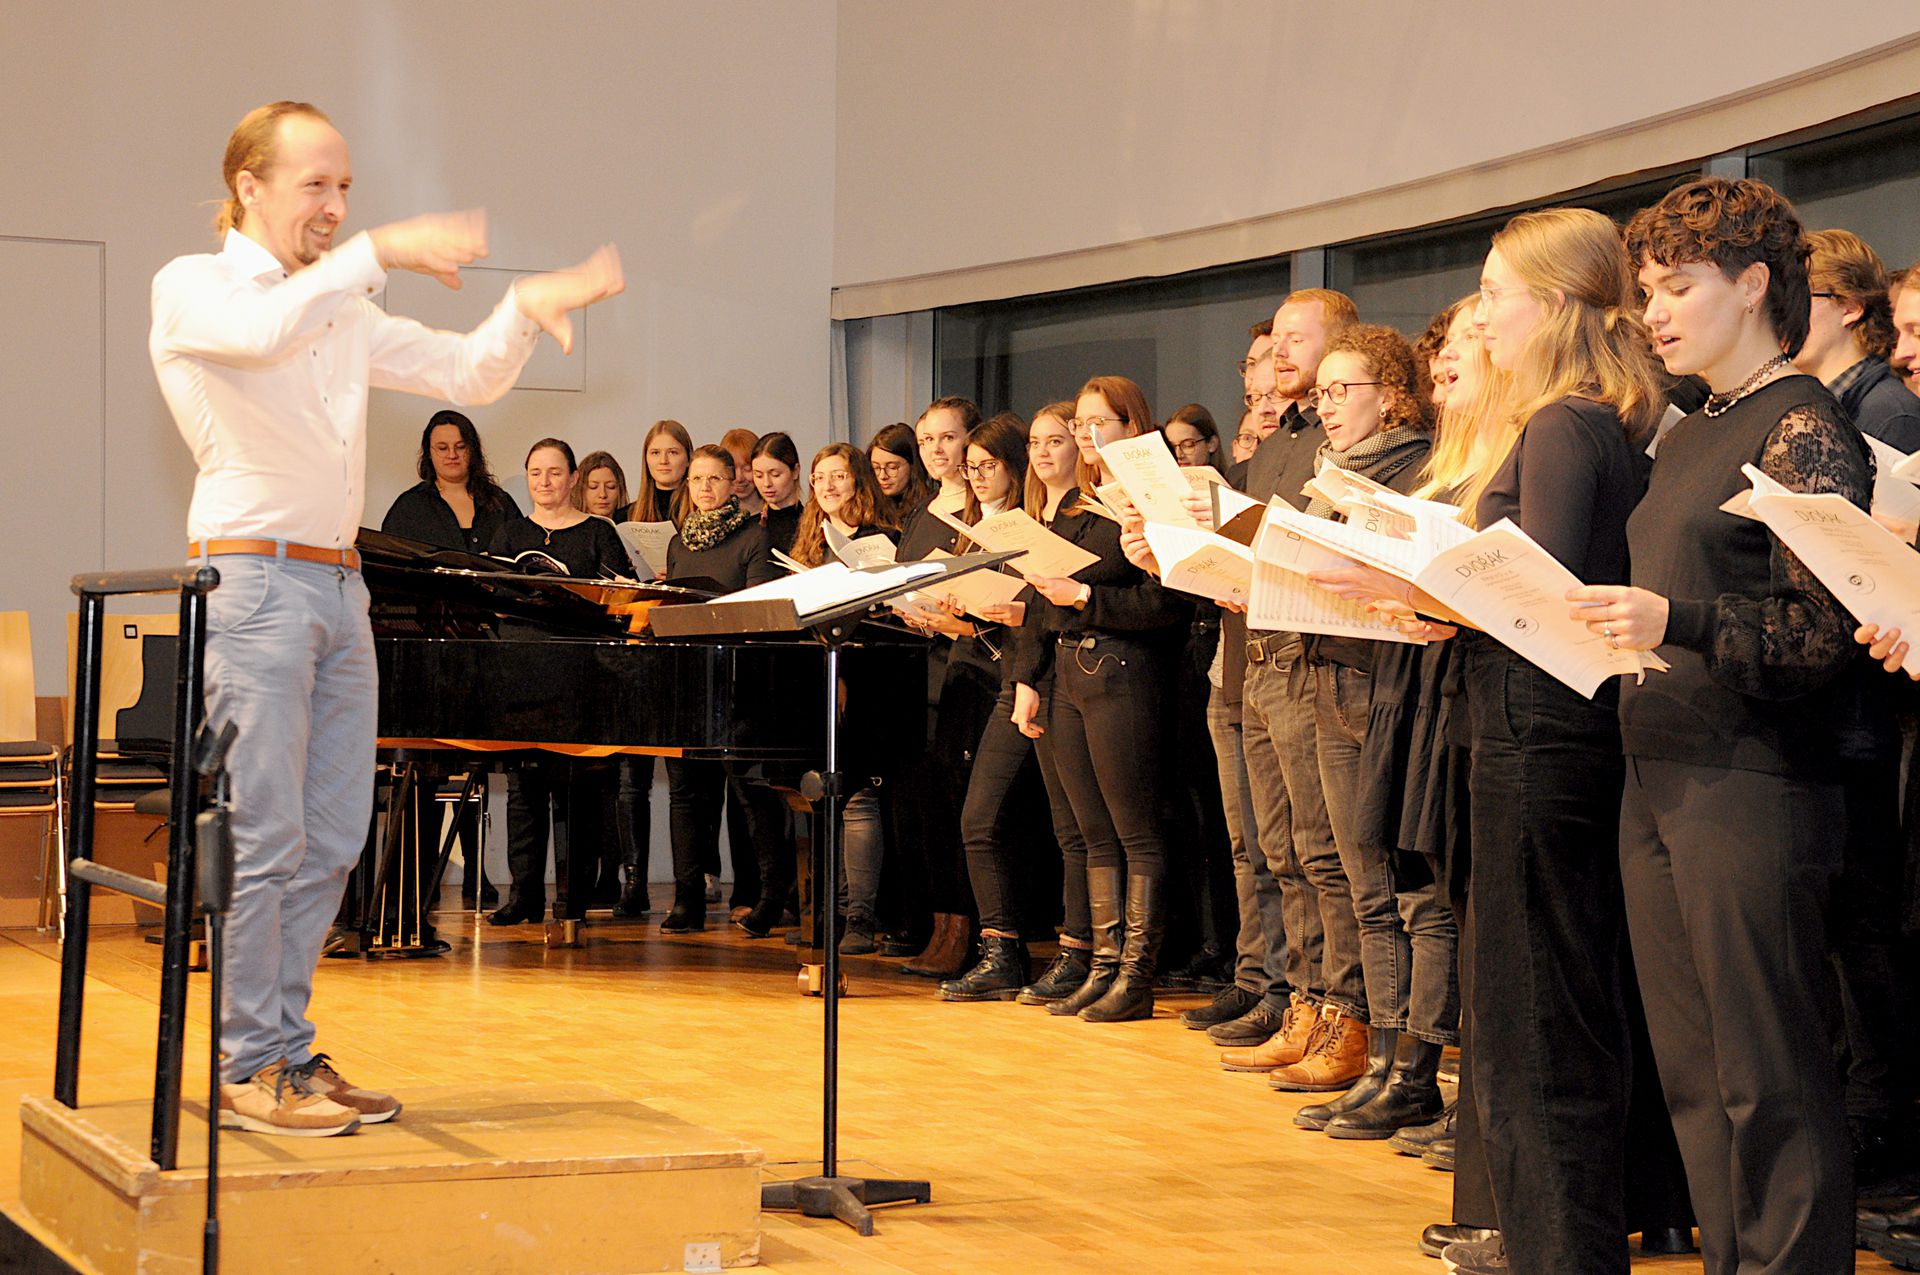 Unter der Leitung von Manuel Haupt sang der Universitätschor von Anton Dvorak aus der Messe in D das "Gloria".